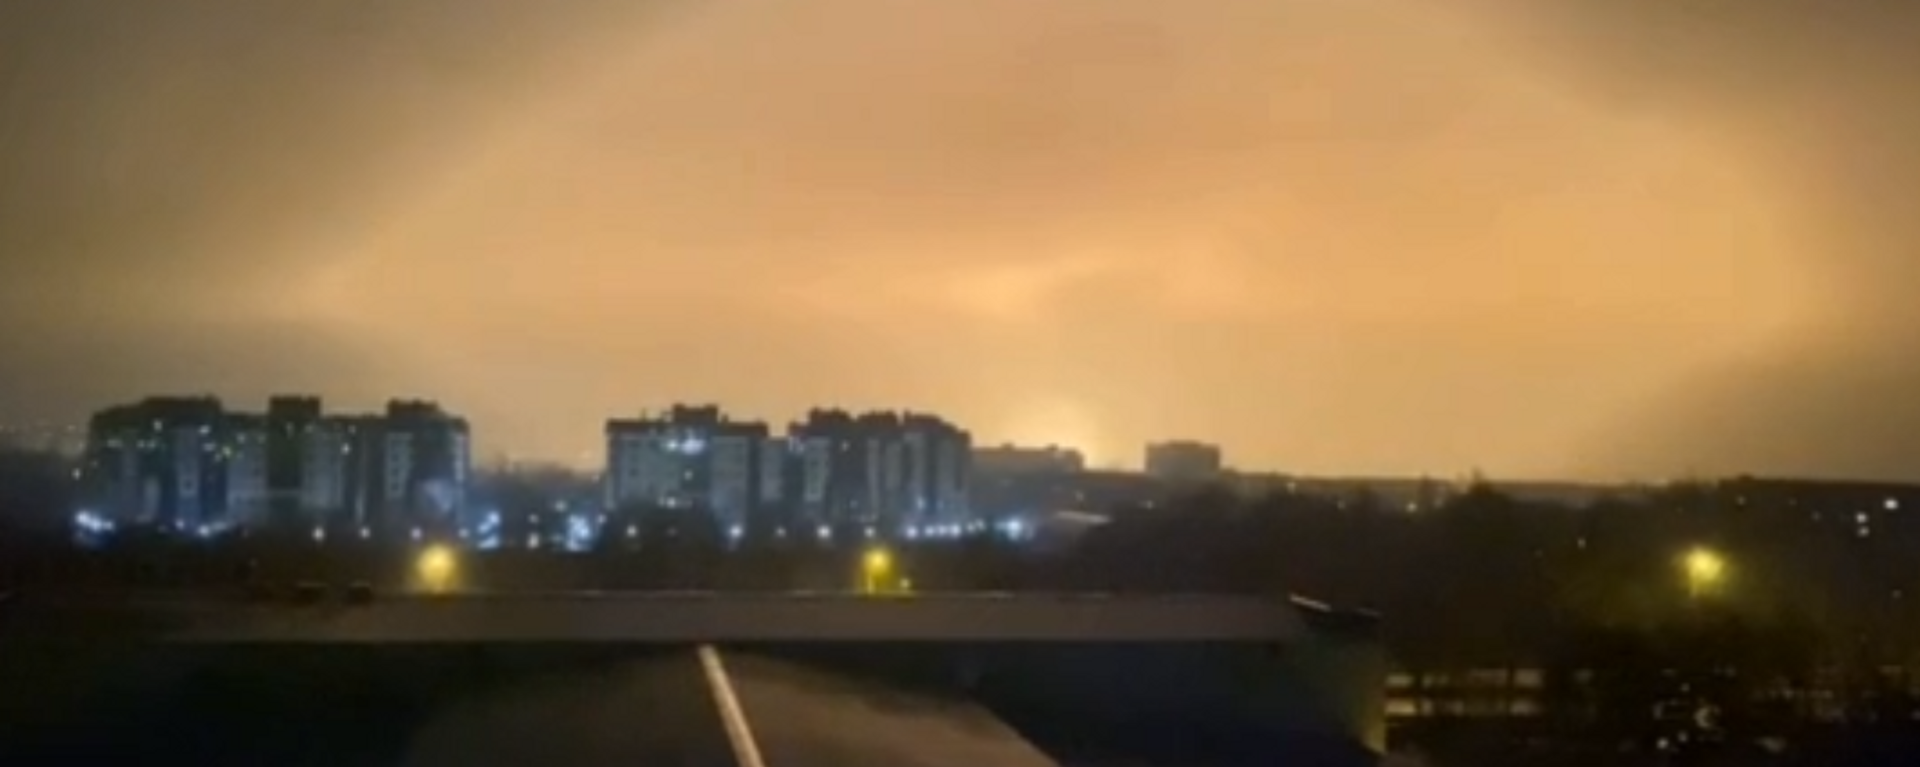 El cielo de la ciudad de Lugansk, en Ucrania, se ilumina tras una potente explosión - Sputnik Mundo, 1920, 18.02.2022